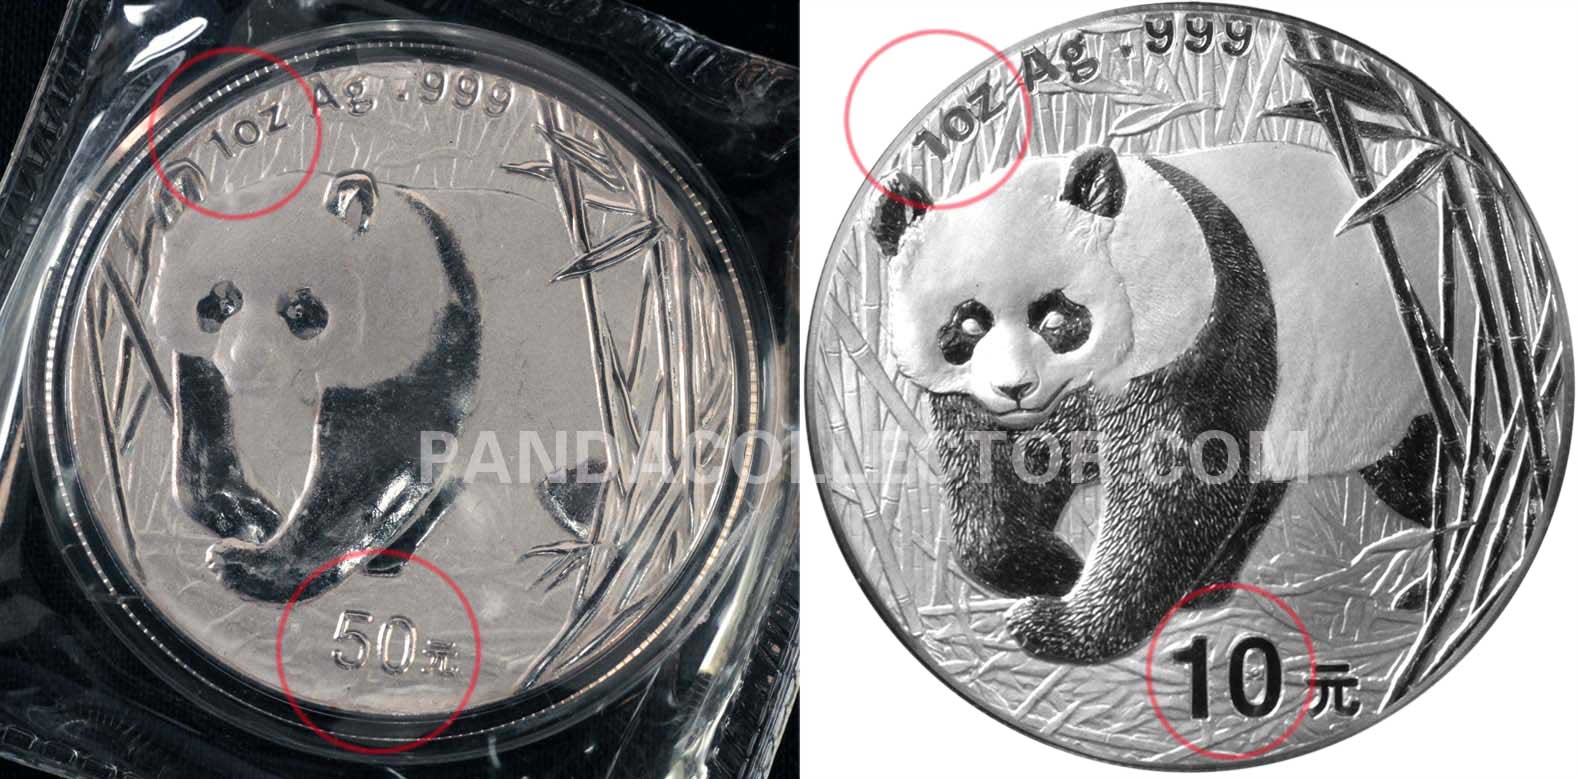 Counterfeit 1990 Gold Panda